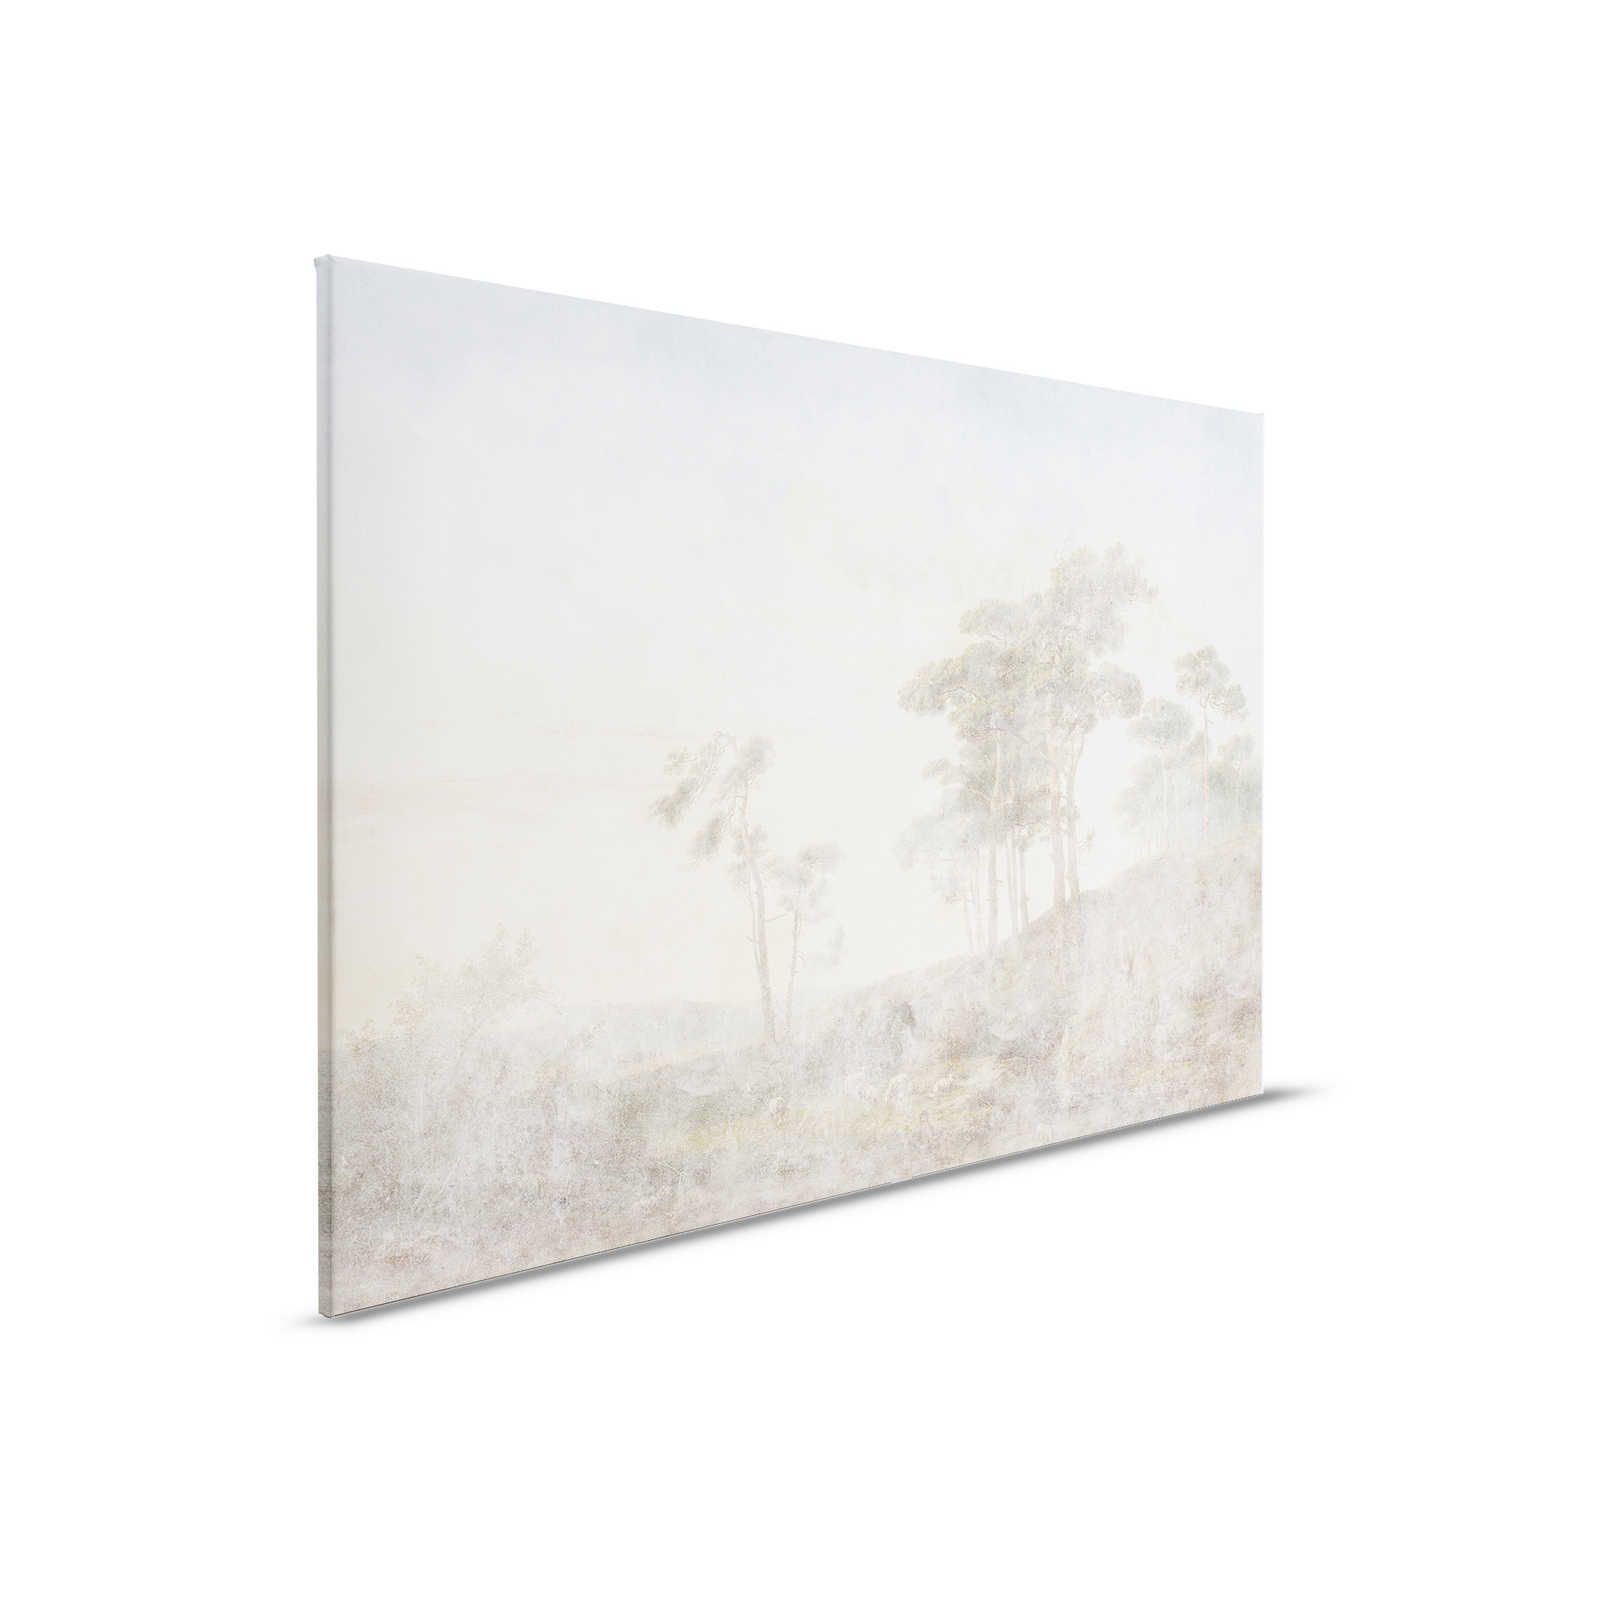 Romantic Grove 1 - Quadro su tela dall'aspetto usato e sbiadito - 0,90 m x 0,60 m
